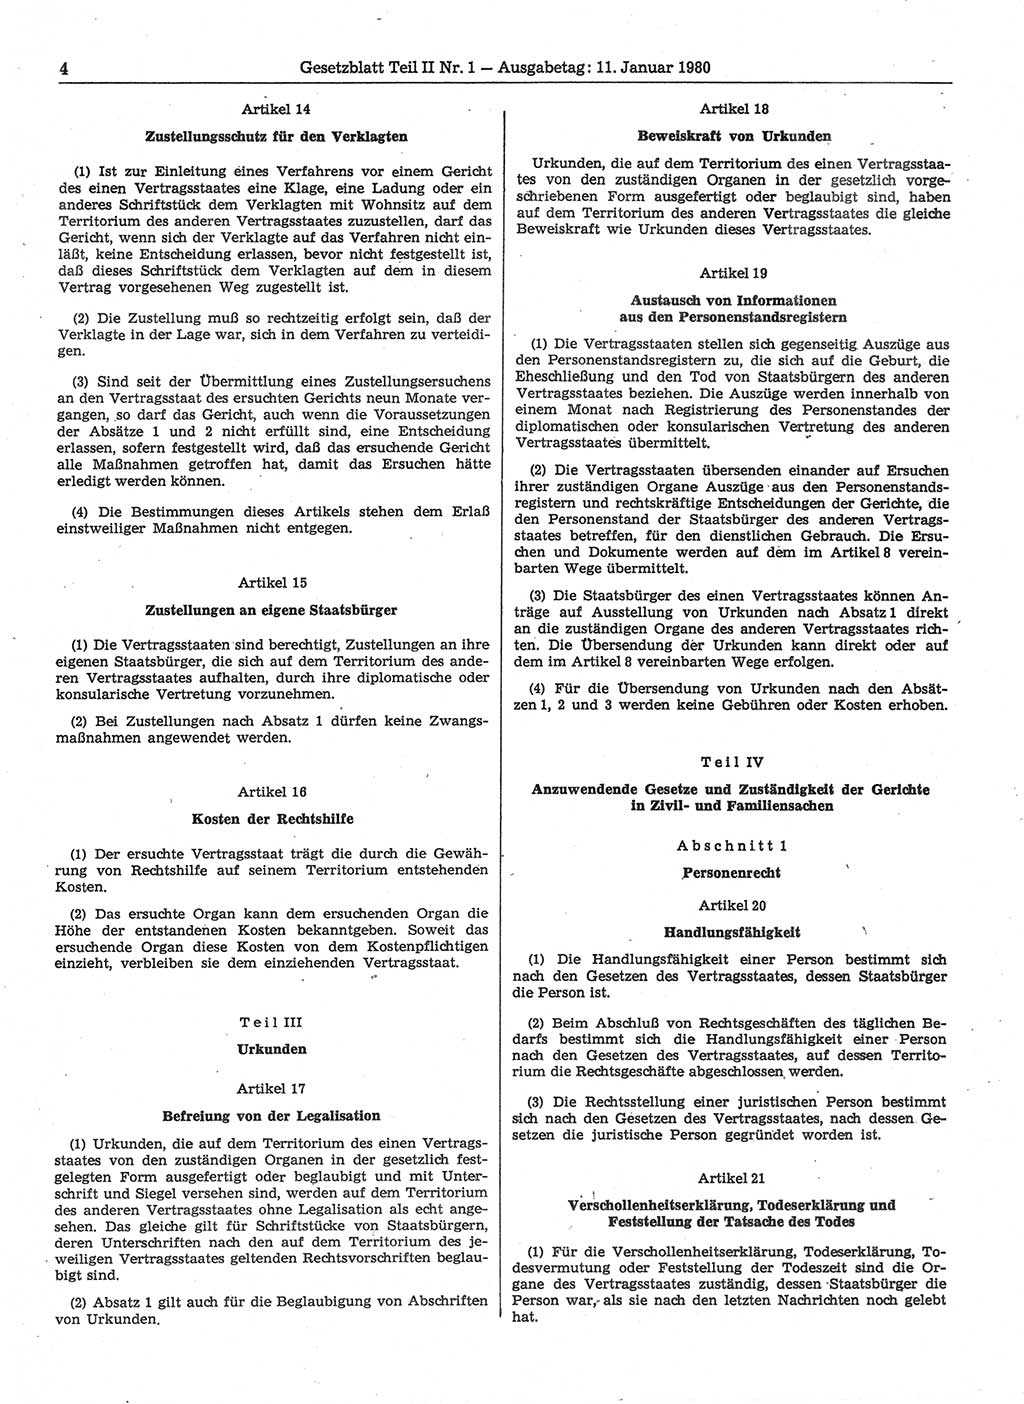 Gesetzblatt (GBl.) der Deutschen Demokratischen Republik (DDR) Teil ⅠⅠ 1980, Seite 4 (GBl. DDR ⅠⅠ 1980, S. 4)